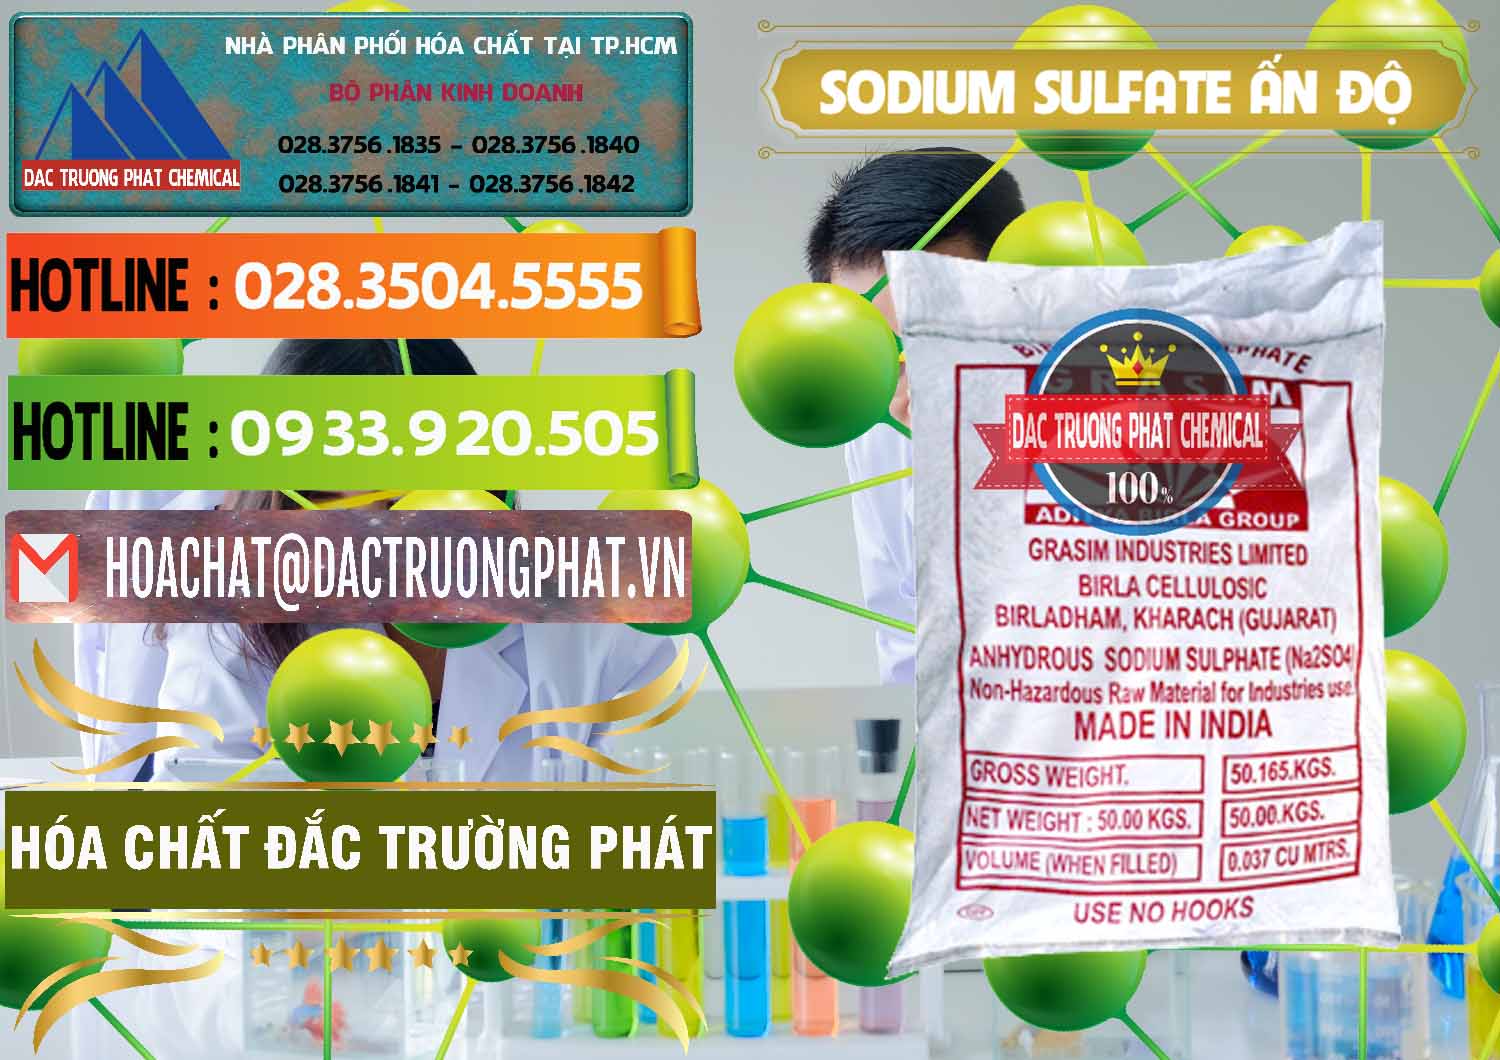 Cty chuyên cung cấp và bán Sodium Sulphate - Muối Sunfat Na2SO4 Aditya Birla Grasim Ấn Độ India - 0462 - Công ty kinh doanh ( phân phối ) hóa chất tại TP.HCM - cungcaphoachat.com.vn